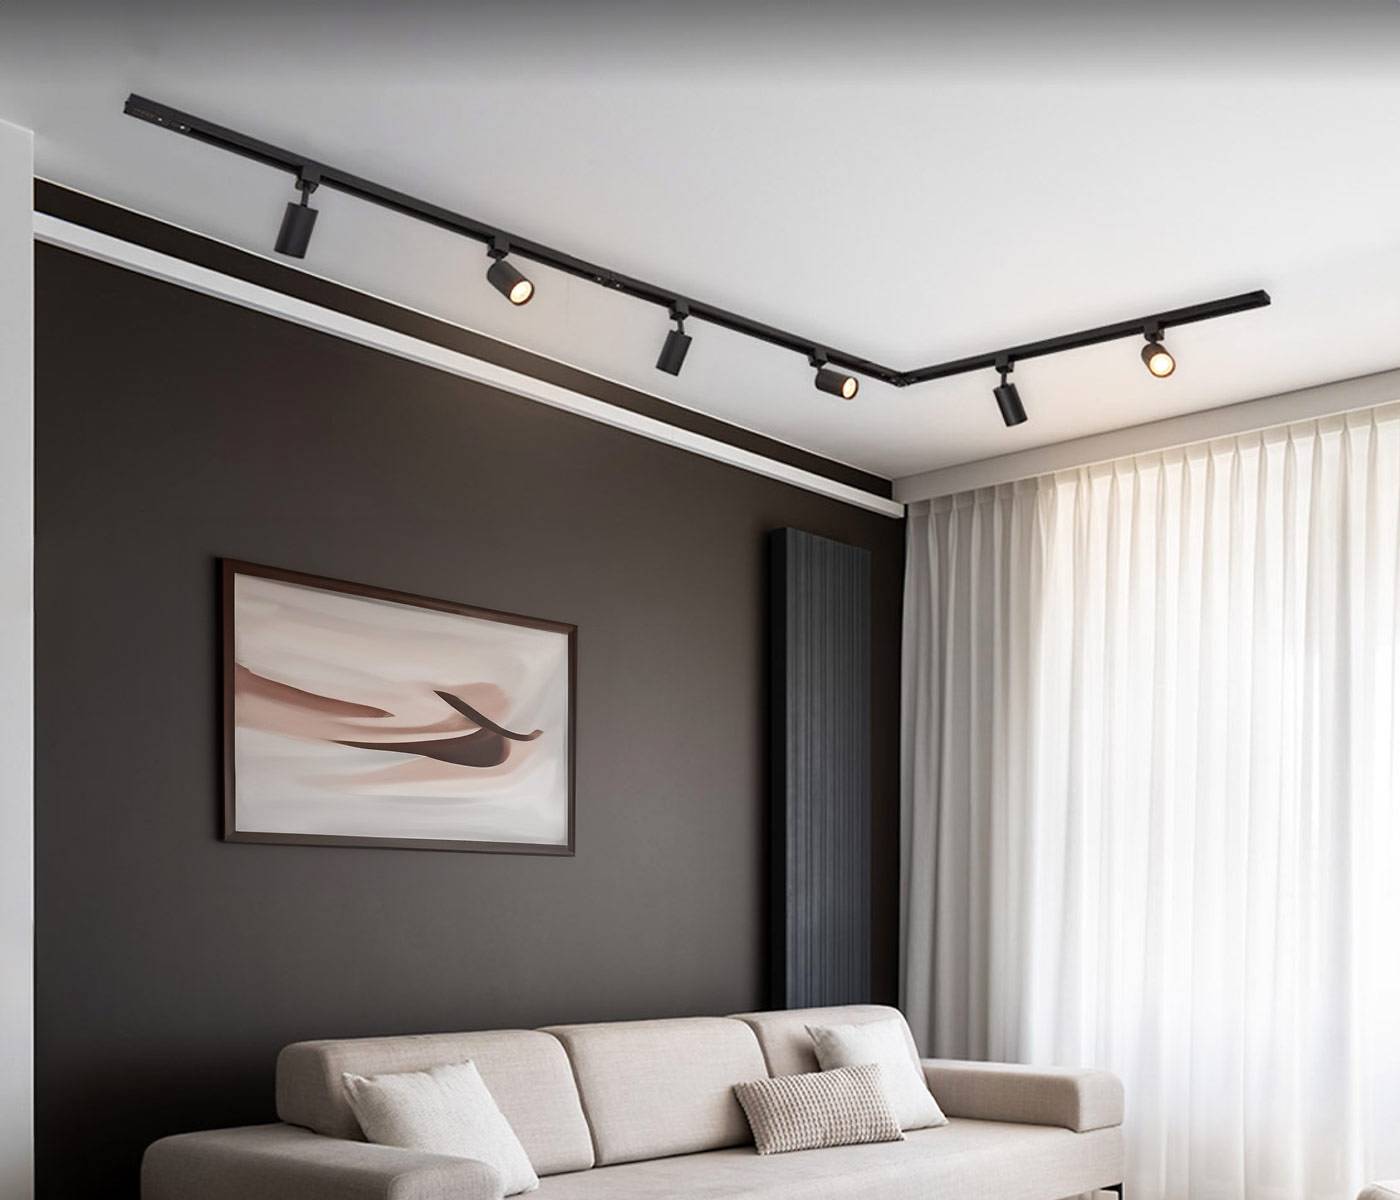 Ampoules à LED blanches chaleureuses, encastrées, enveloppe transpare -  LumenXL